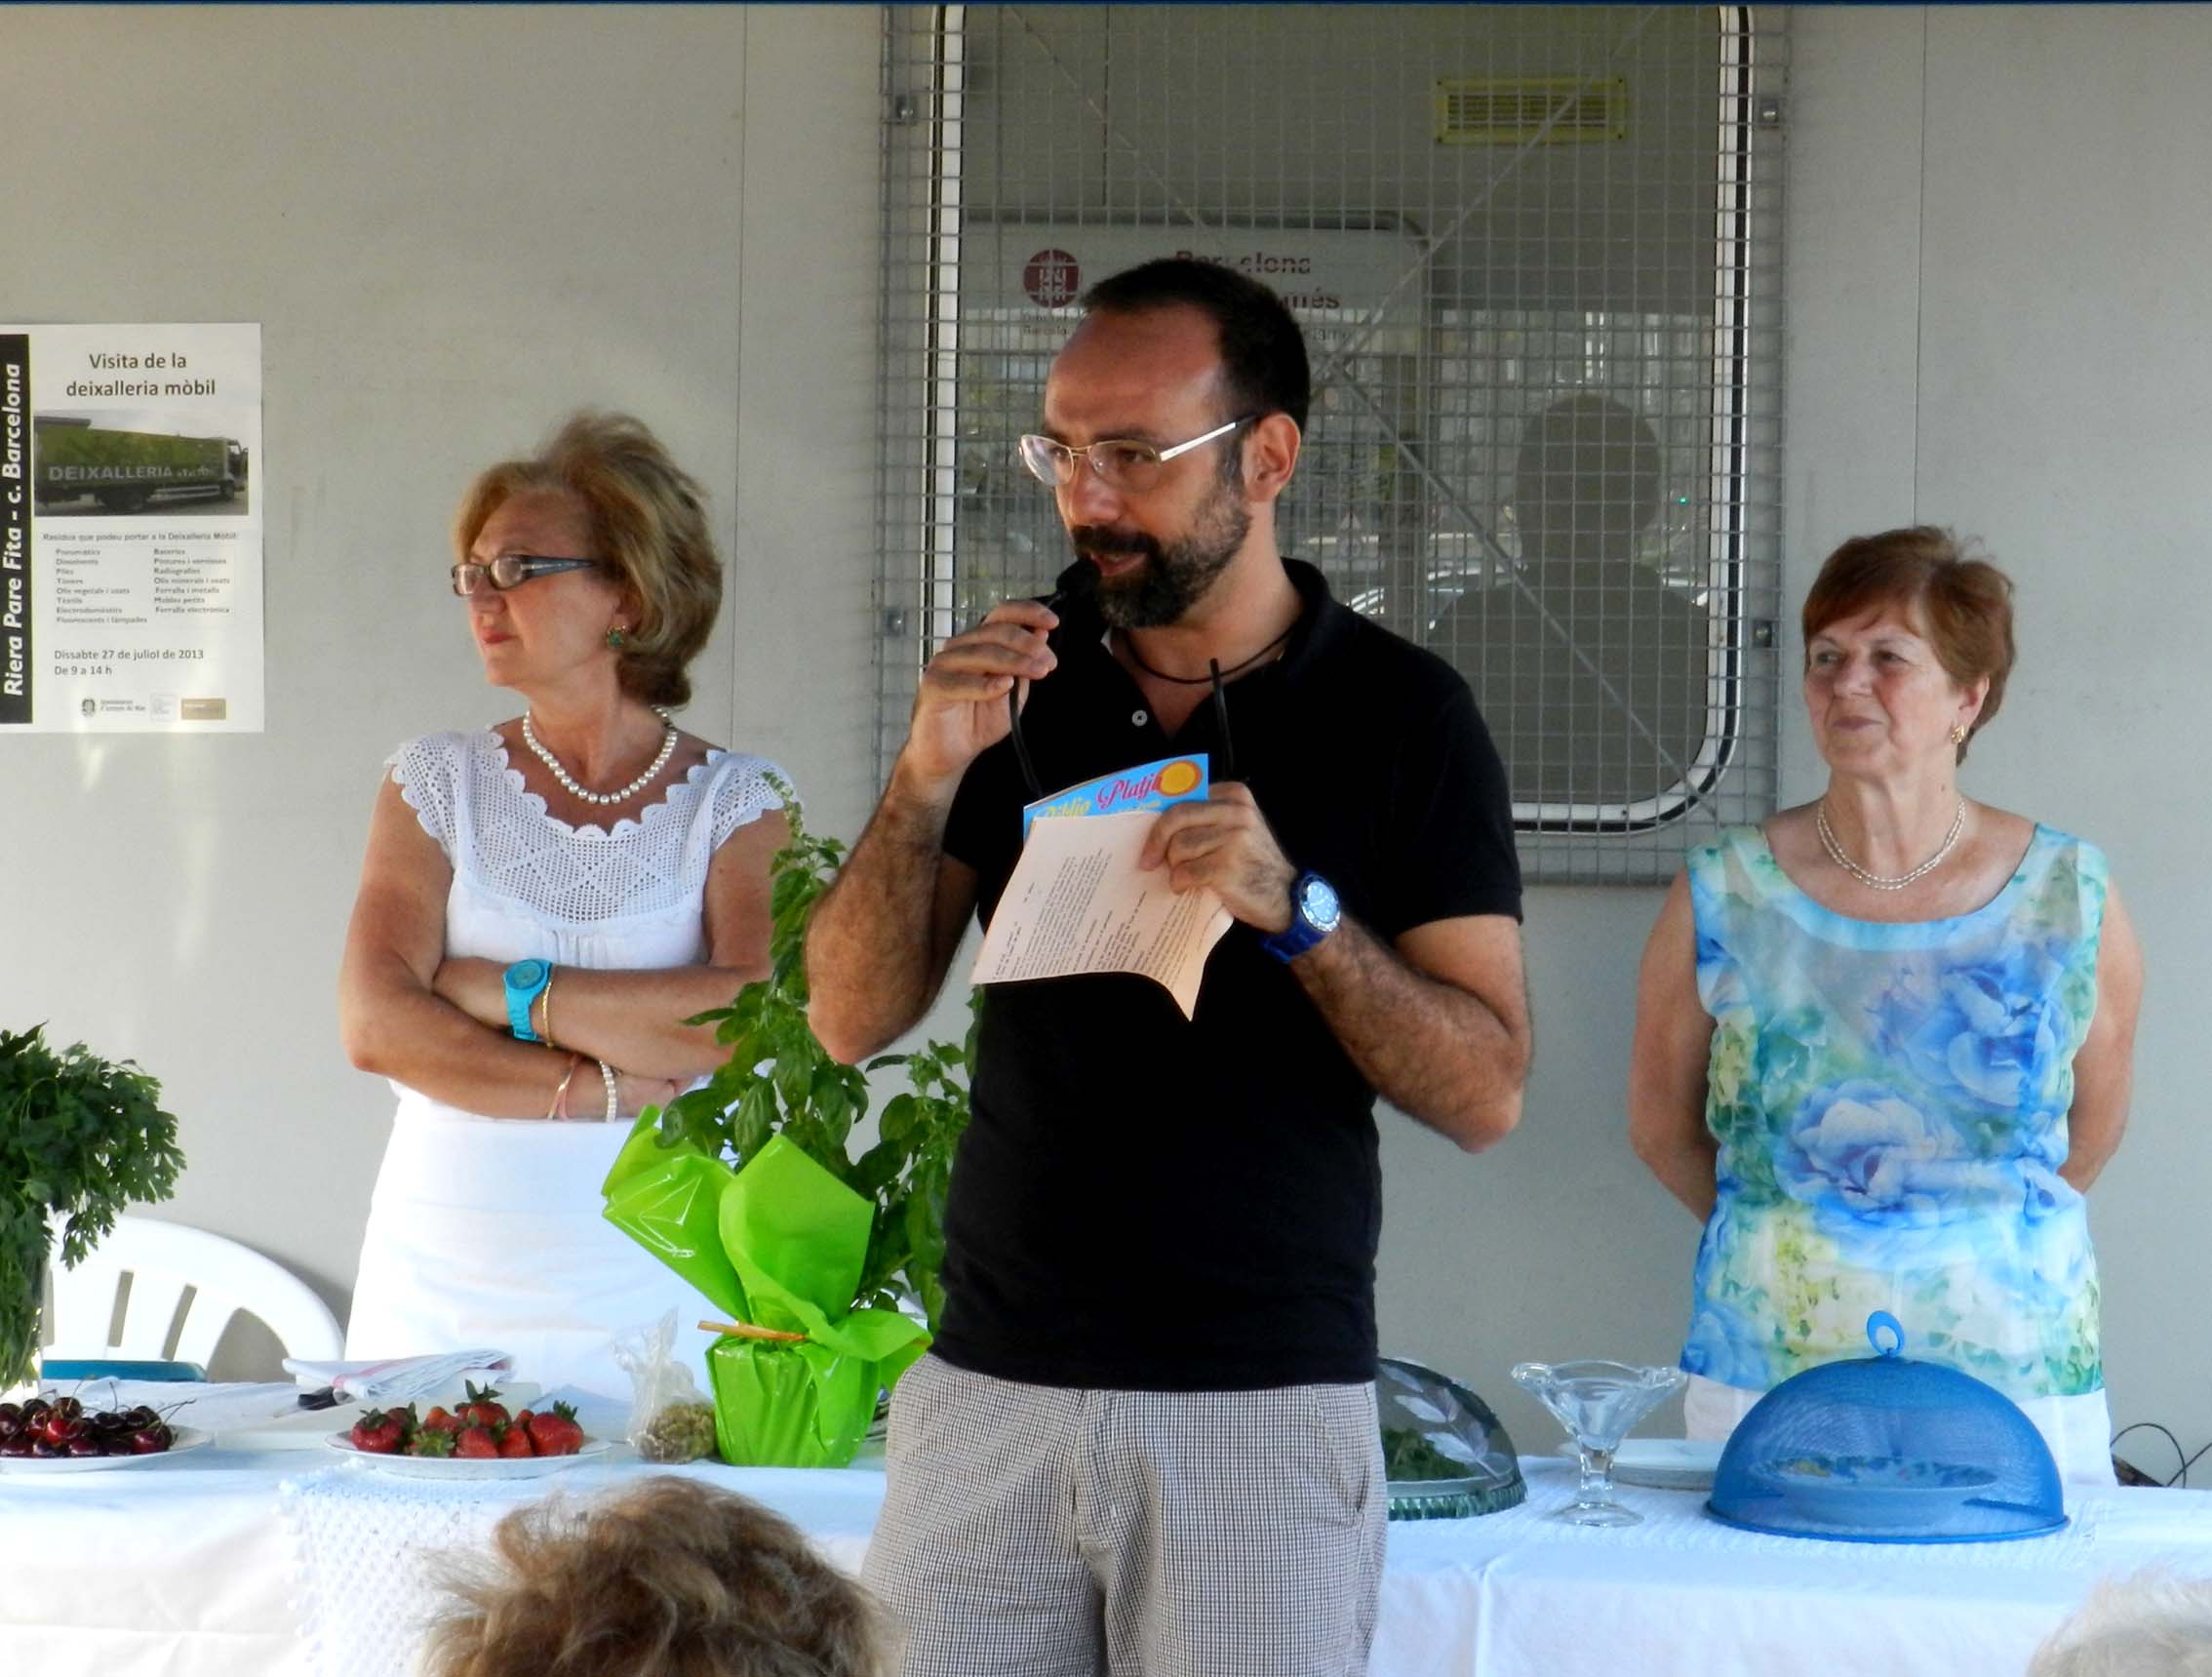 Demostraci de cuina d'estiu amb Rosario Montoza (22.07.2013)